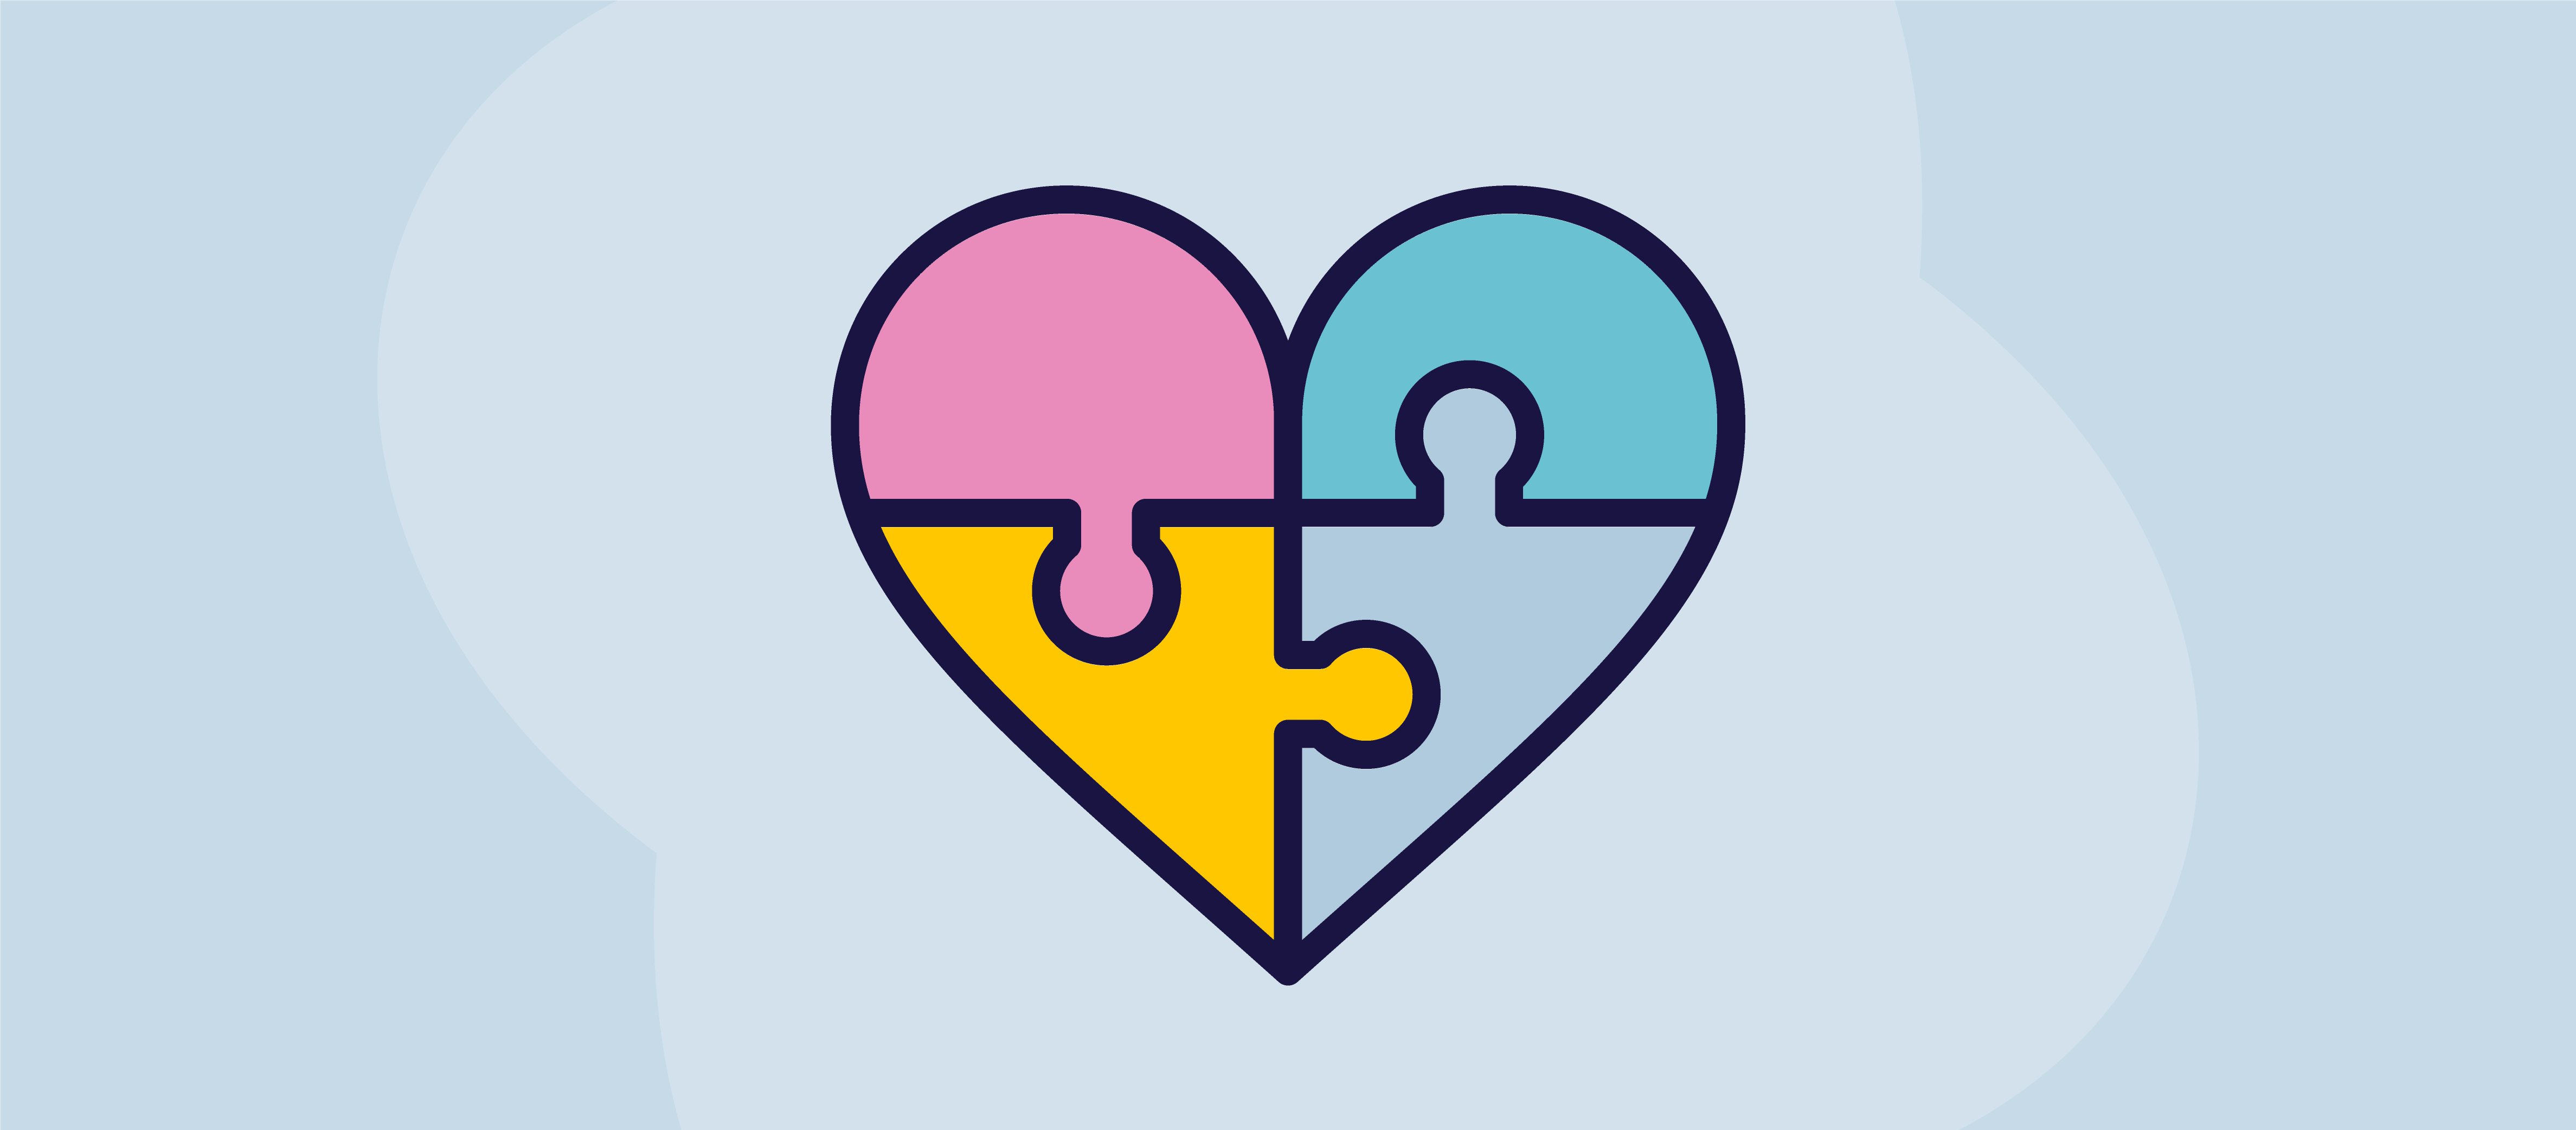 Eine Illustration eines Herzens als Puzzle mit vier verschiedenfarbigen Teilen, die zusammengefügt werden müssen, um es vollständig zu machen.